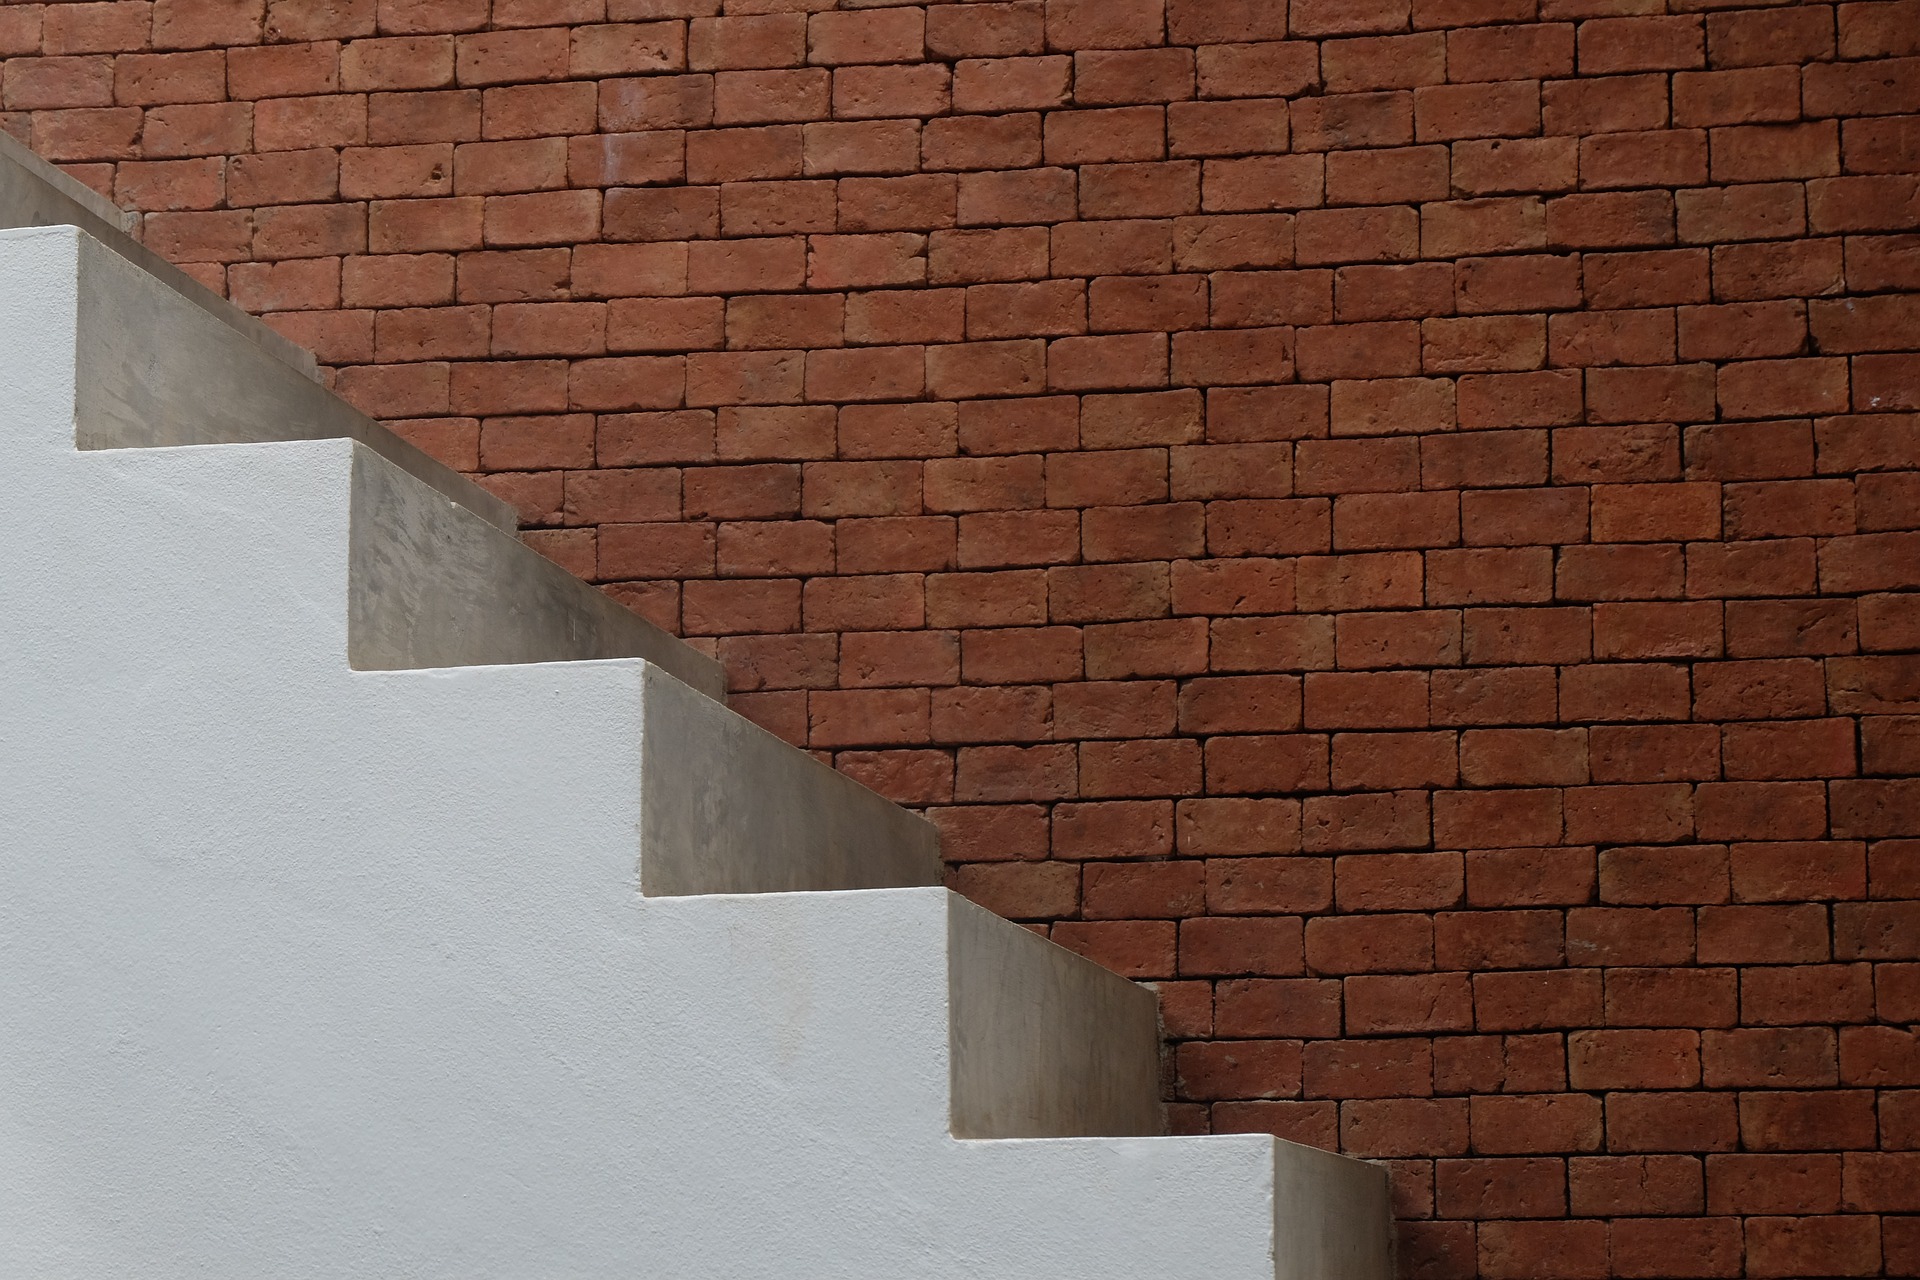 Szalowanie schodów – jak poprawnie wykonać schody z betonu